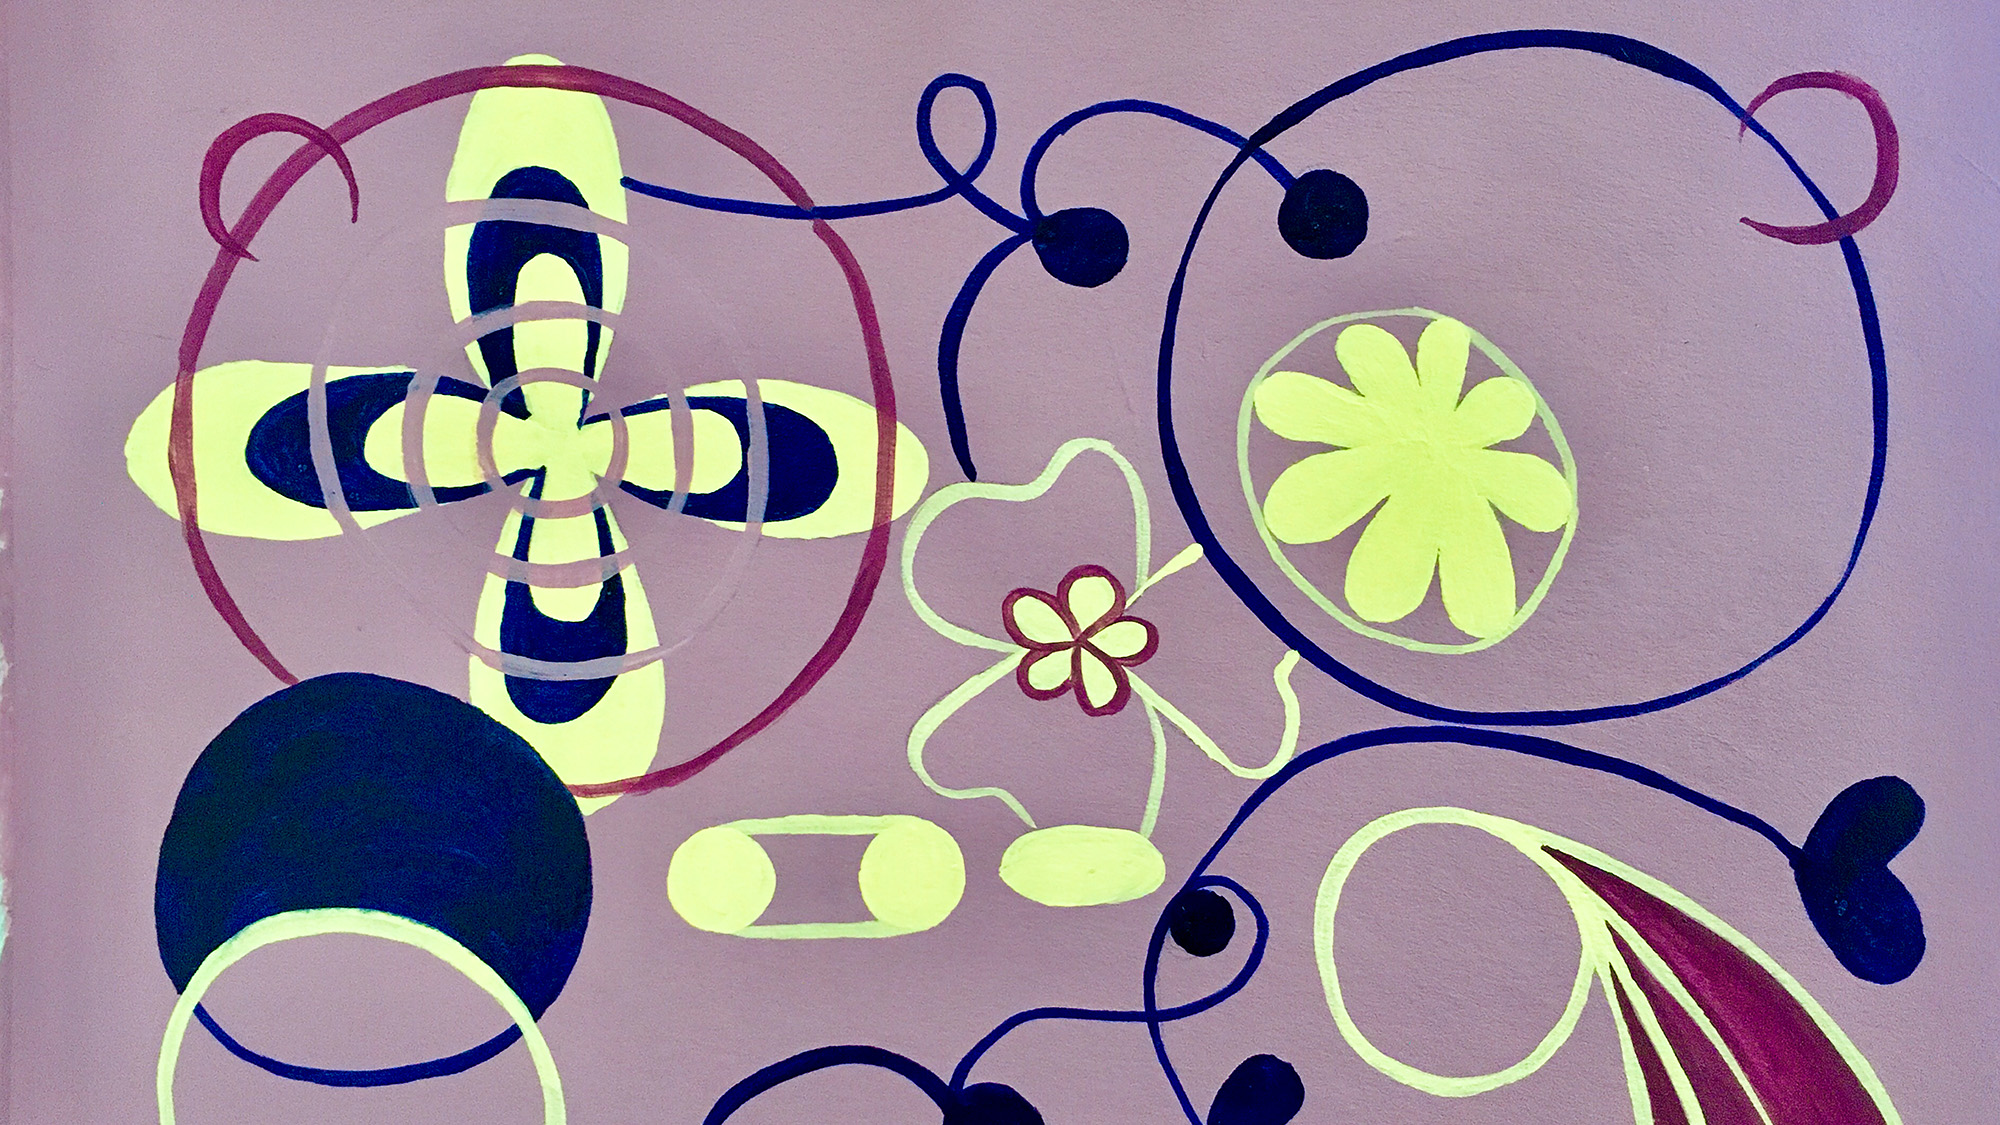 Een schilderij met abstracte patronen, gebogen lijnen, spiralen en kleine geschilderde vlekken in violette, blauwe en gele tinten.